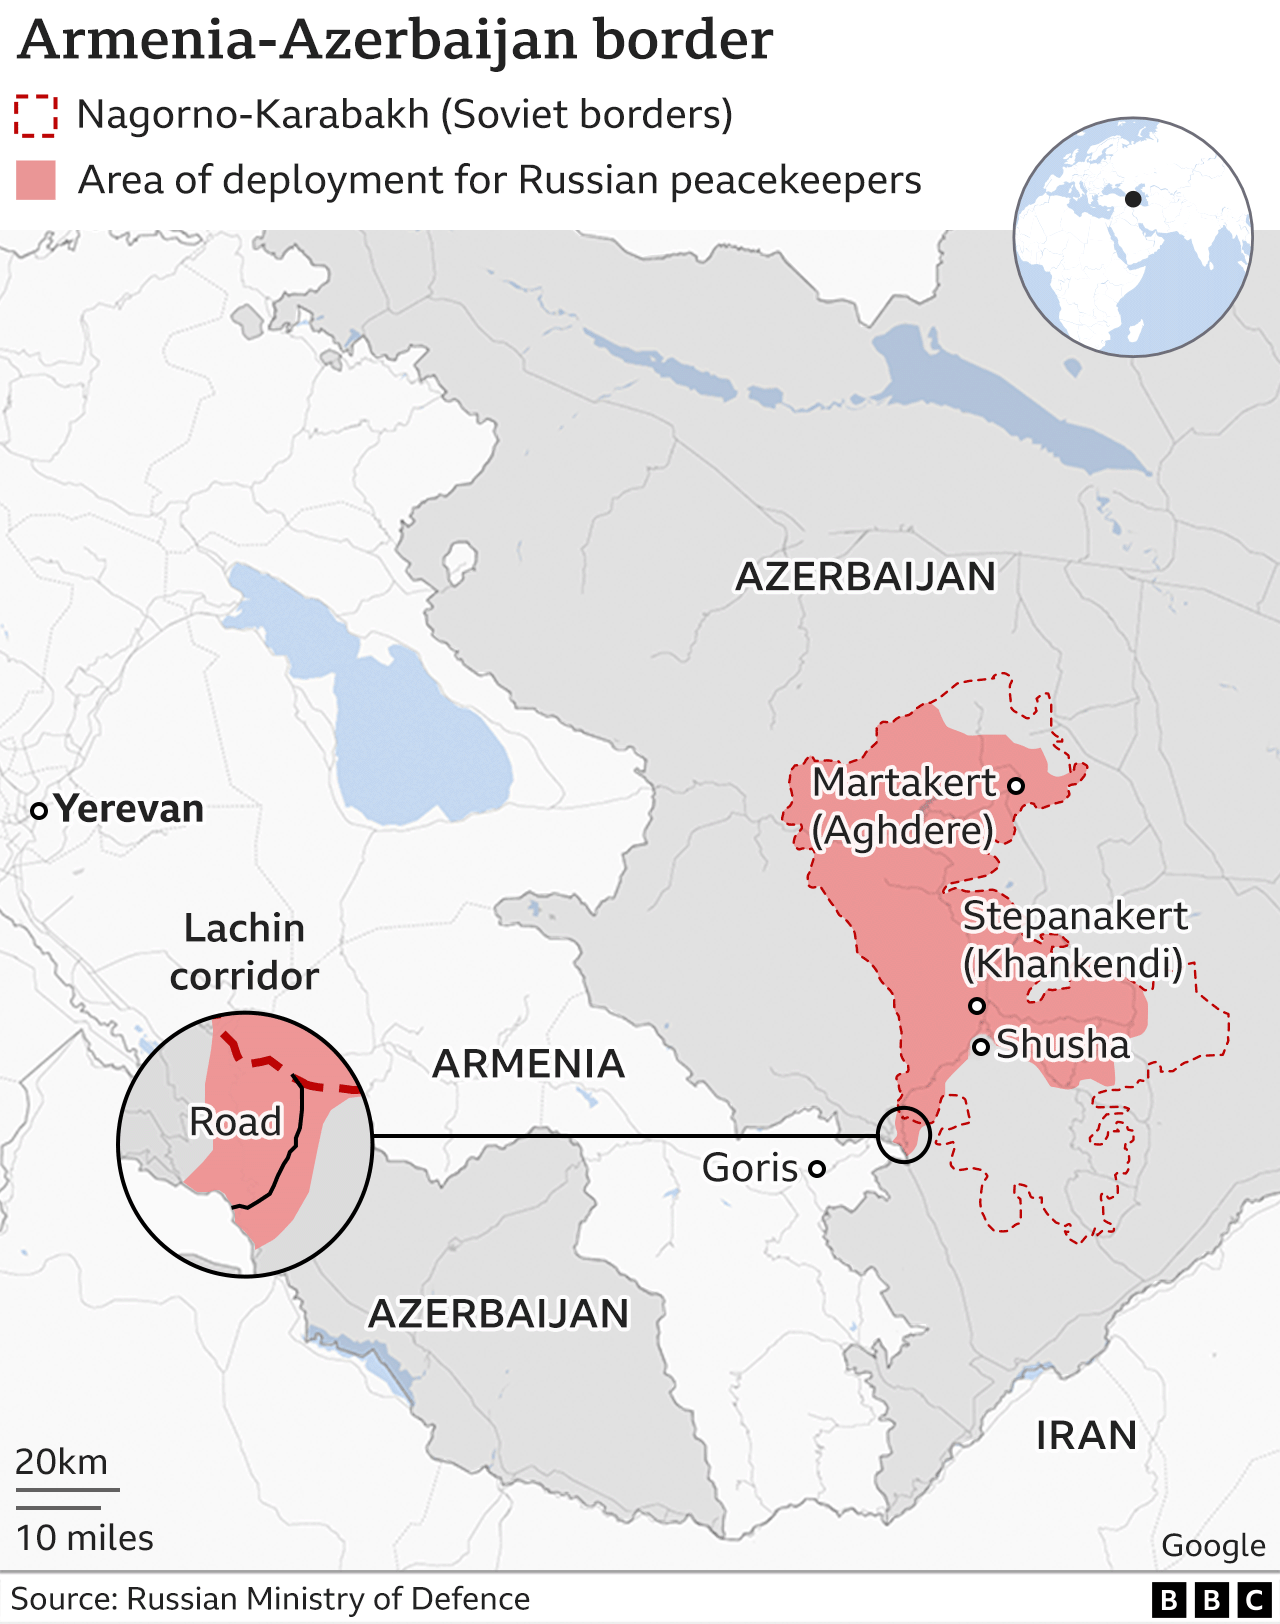 На карте показано расположение Лачинского коридора и армяно-азербайджанской границы